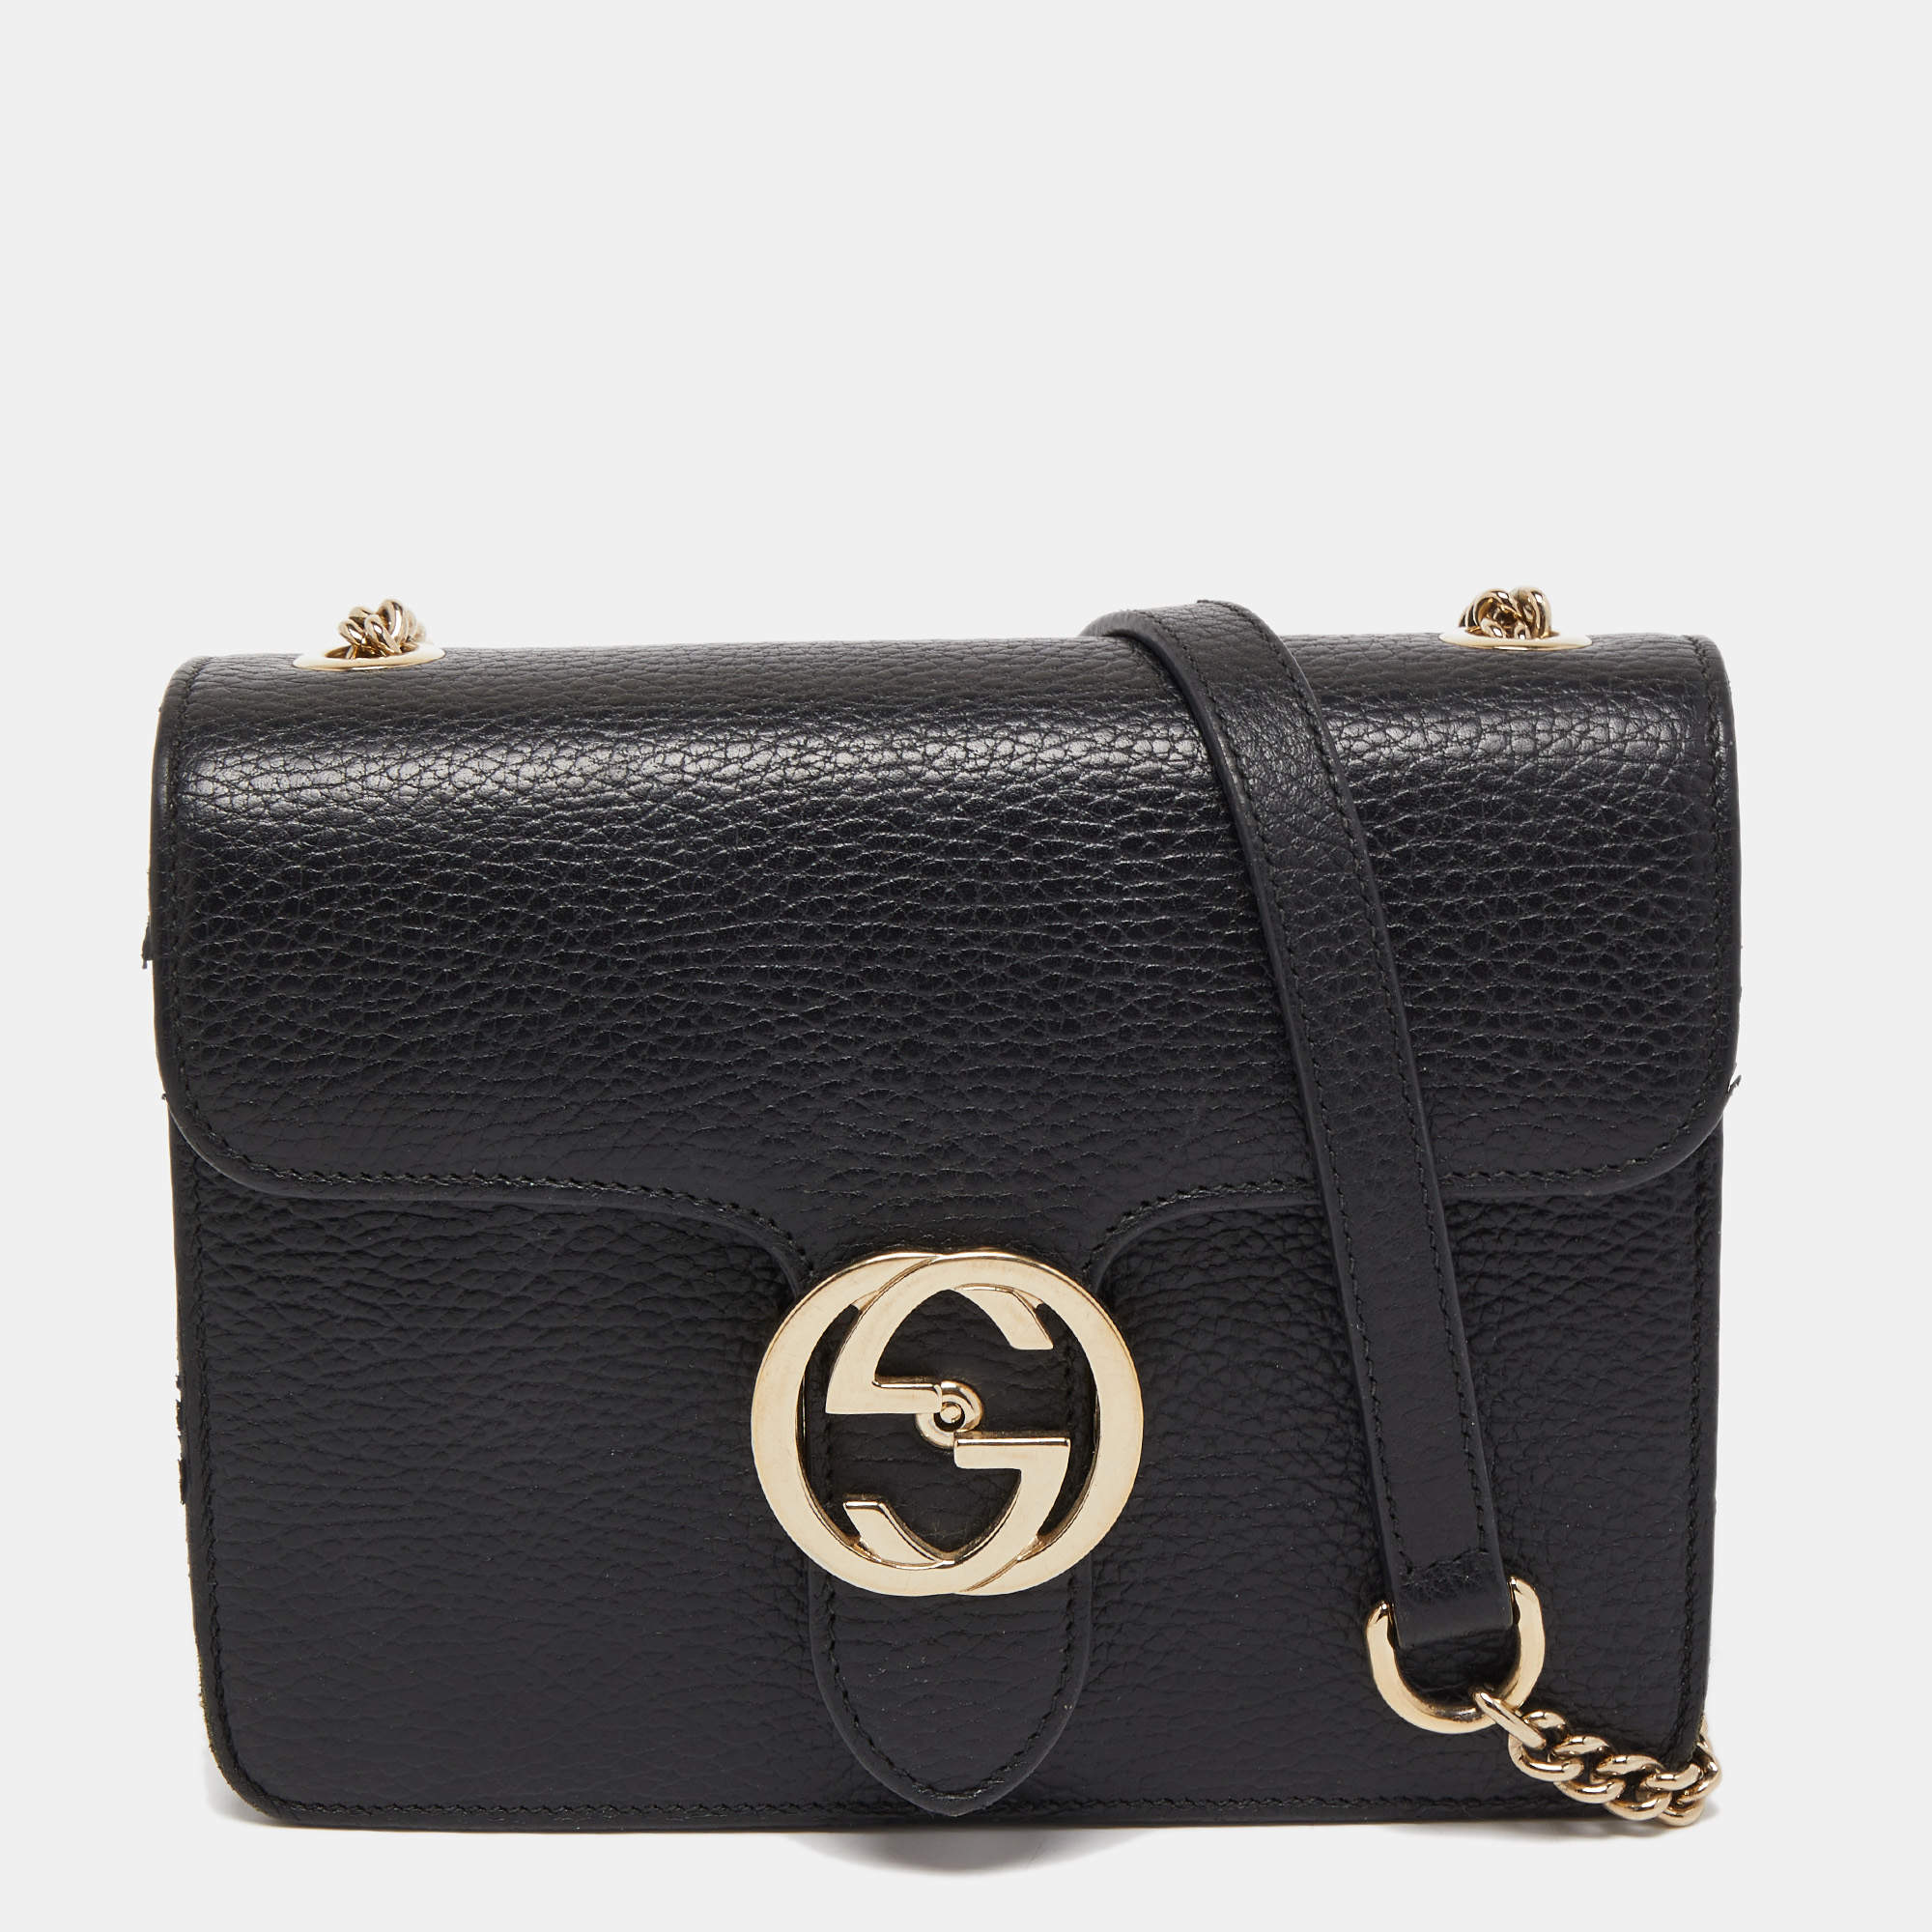 Gucci Black Leather Dollar Interlocking G Crossbody Bag Gucci | The ...